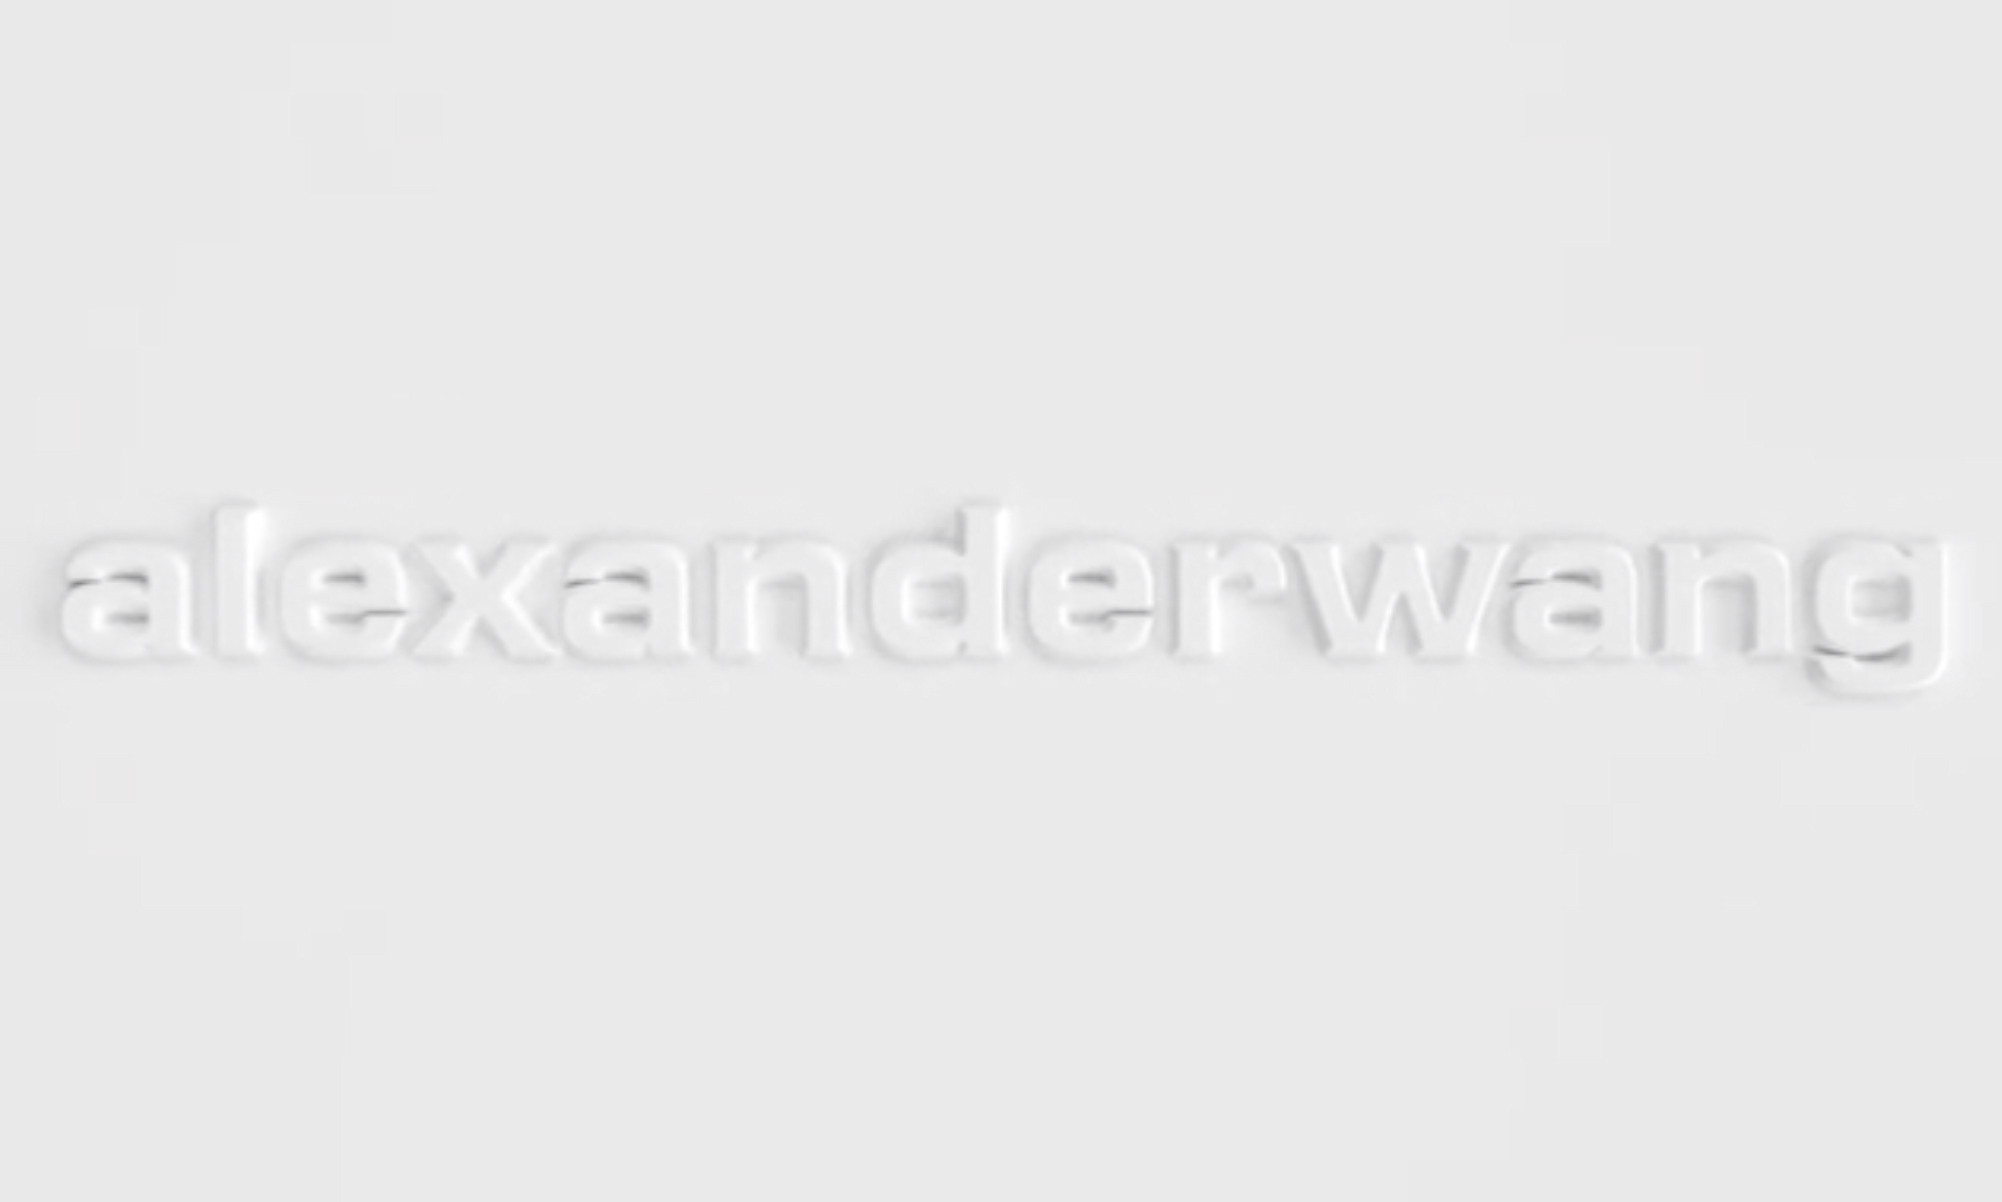 ALEXANDER WANG 更换全新 Logo，“变身” alexanderwang